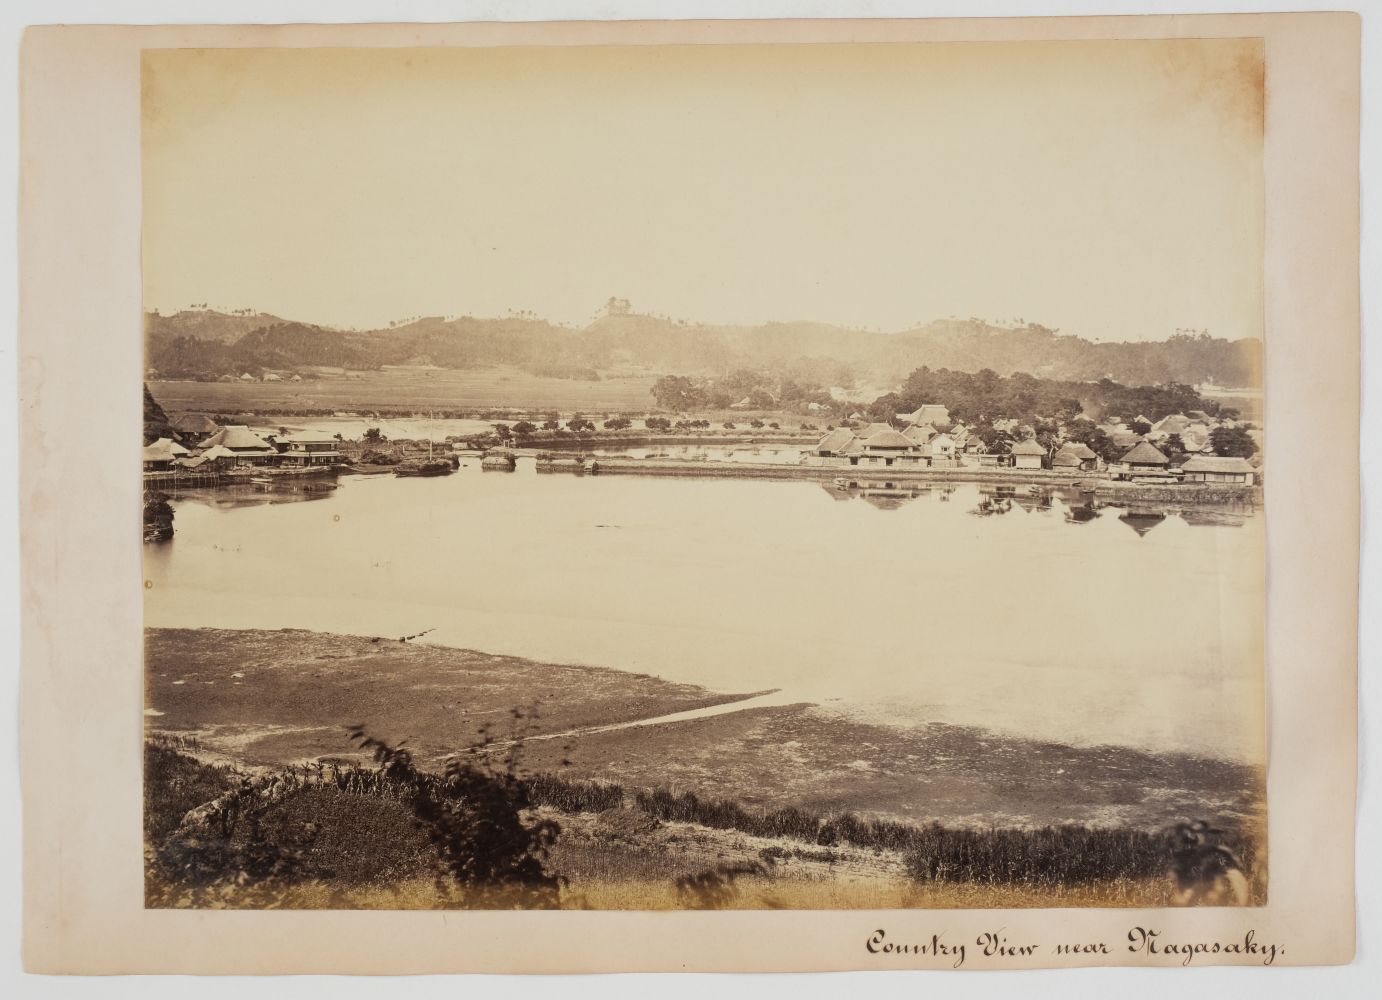 * Attrib. to Charles Leander Weed. Country View near Nagasaky, [Nagasaki, Japan], c. 1867 - Image 2 of 2